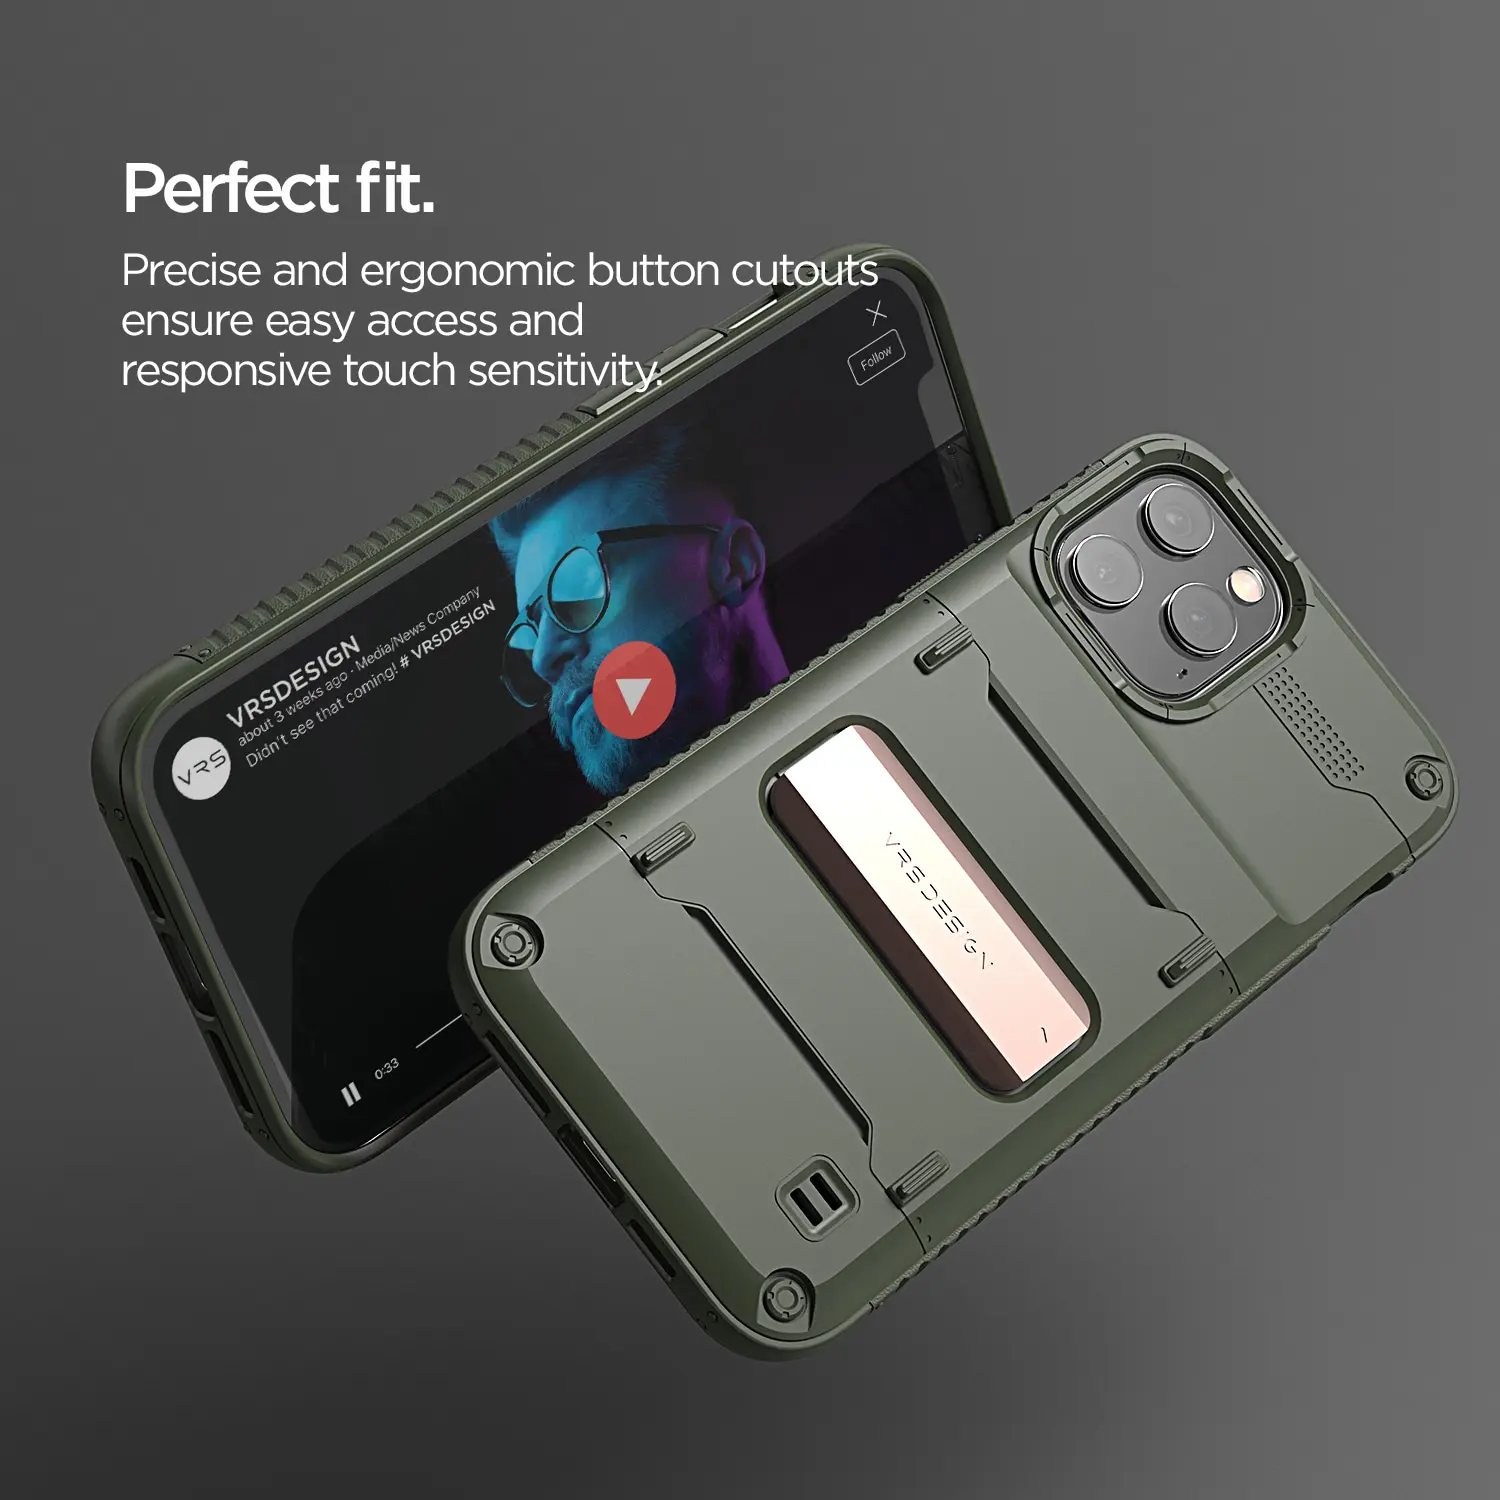 เคส VRS รุ่น Quick Stand - iPhone 12 Pro Max - เขียว/บรอนซ์